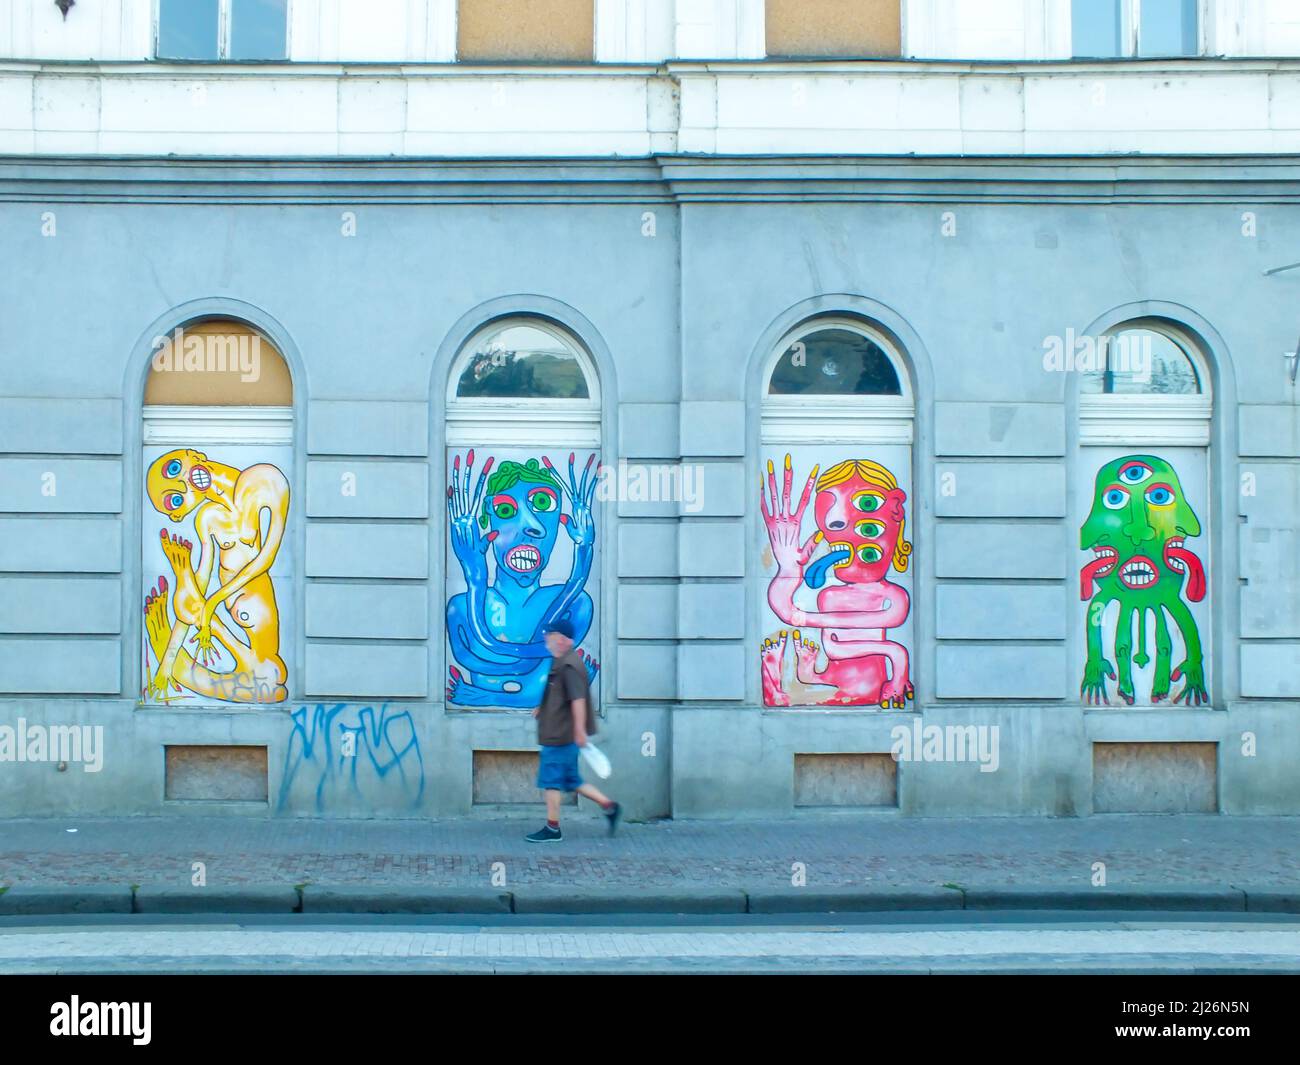 Praga, Repubblica Ceca-13 giugno 2015: Un uomo cammina lungo un muro con graffiti colorati nella strada, Una facciata edificio con graffiti su finestre ad arco Foto Stock